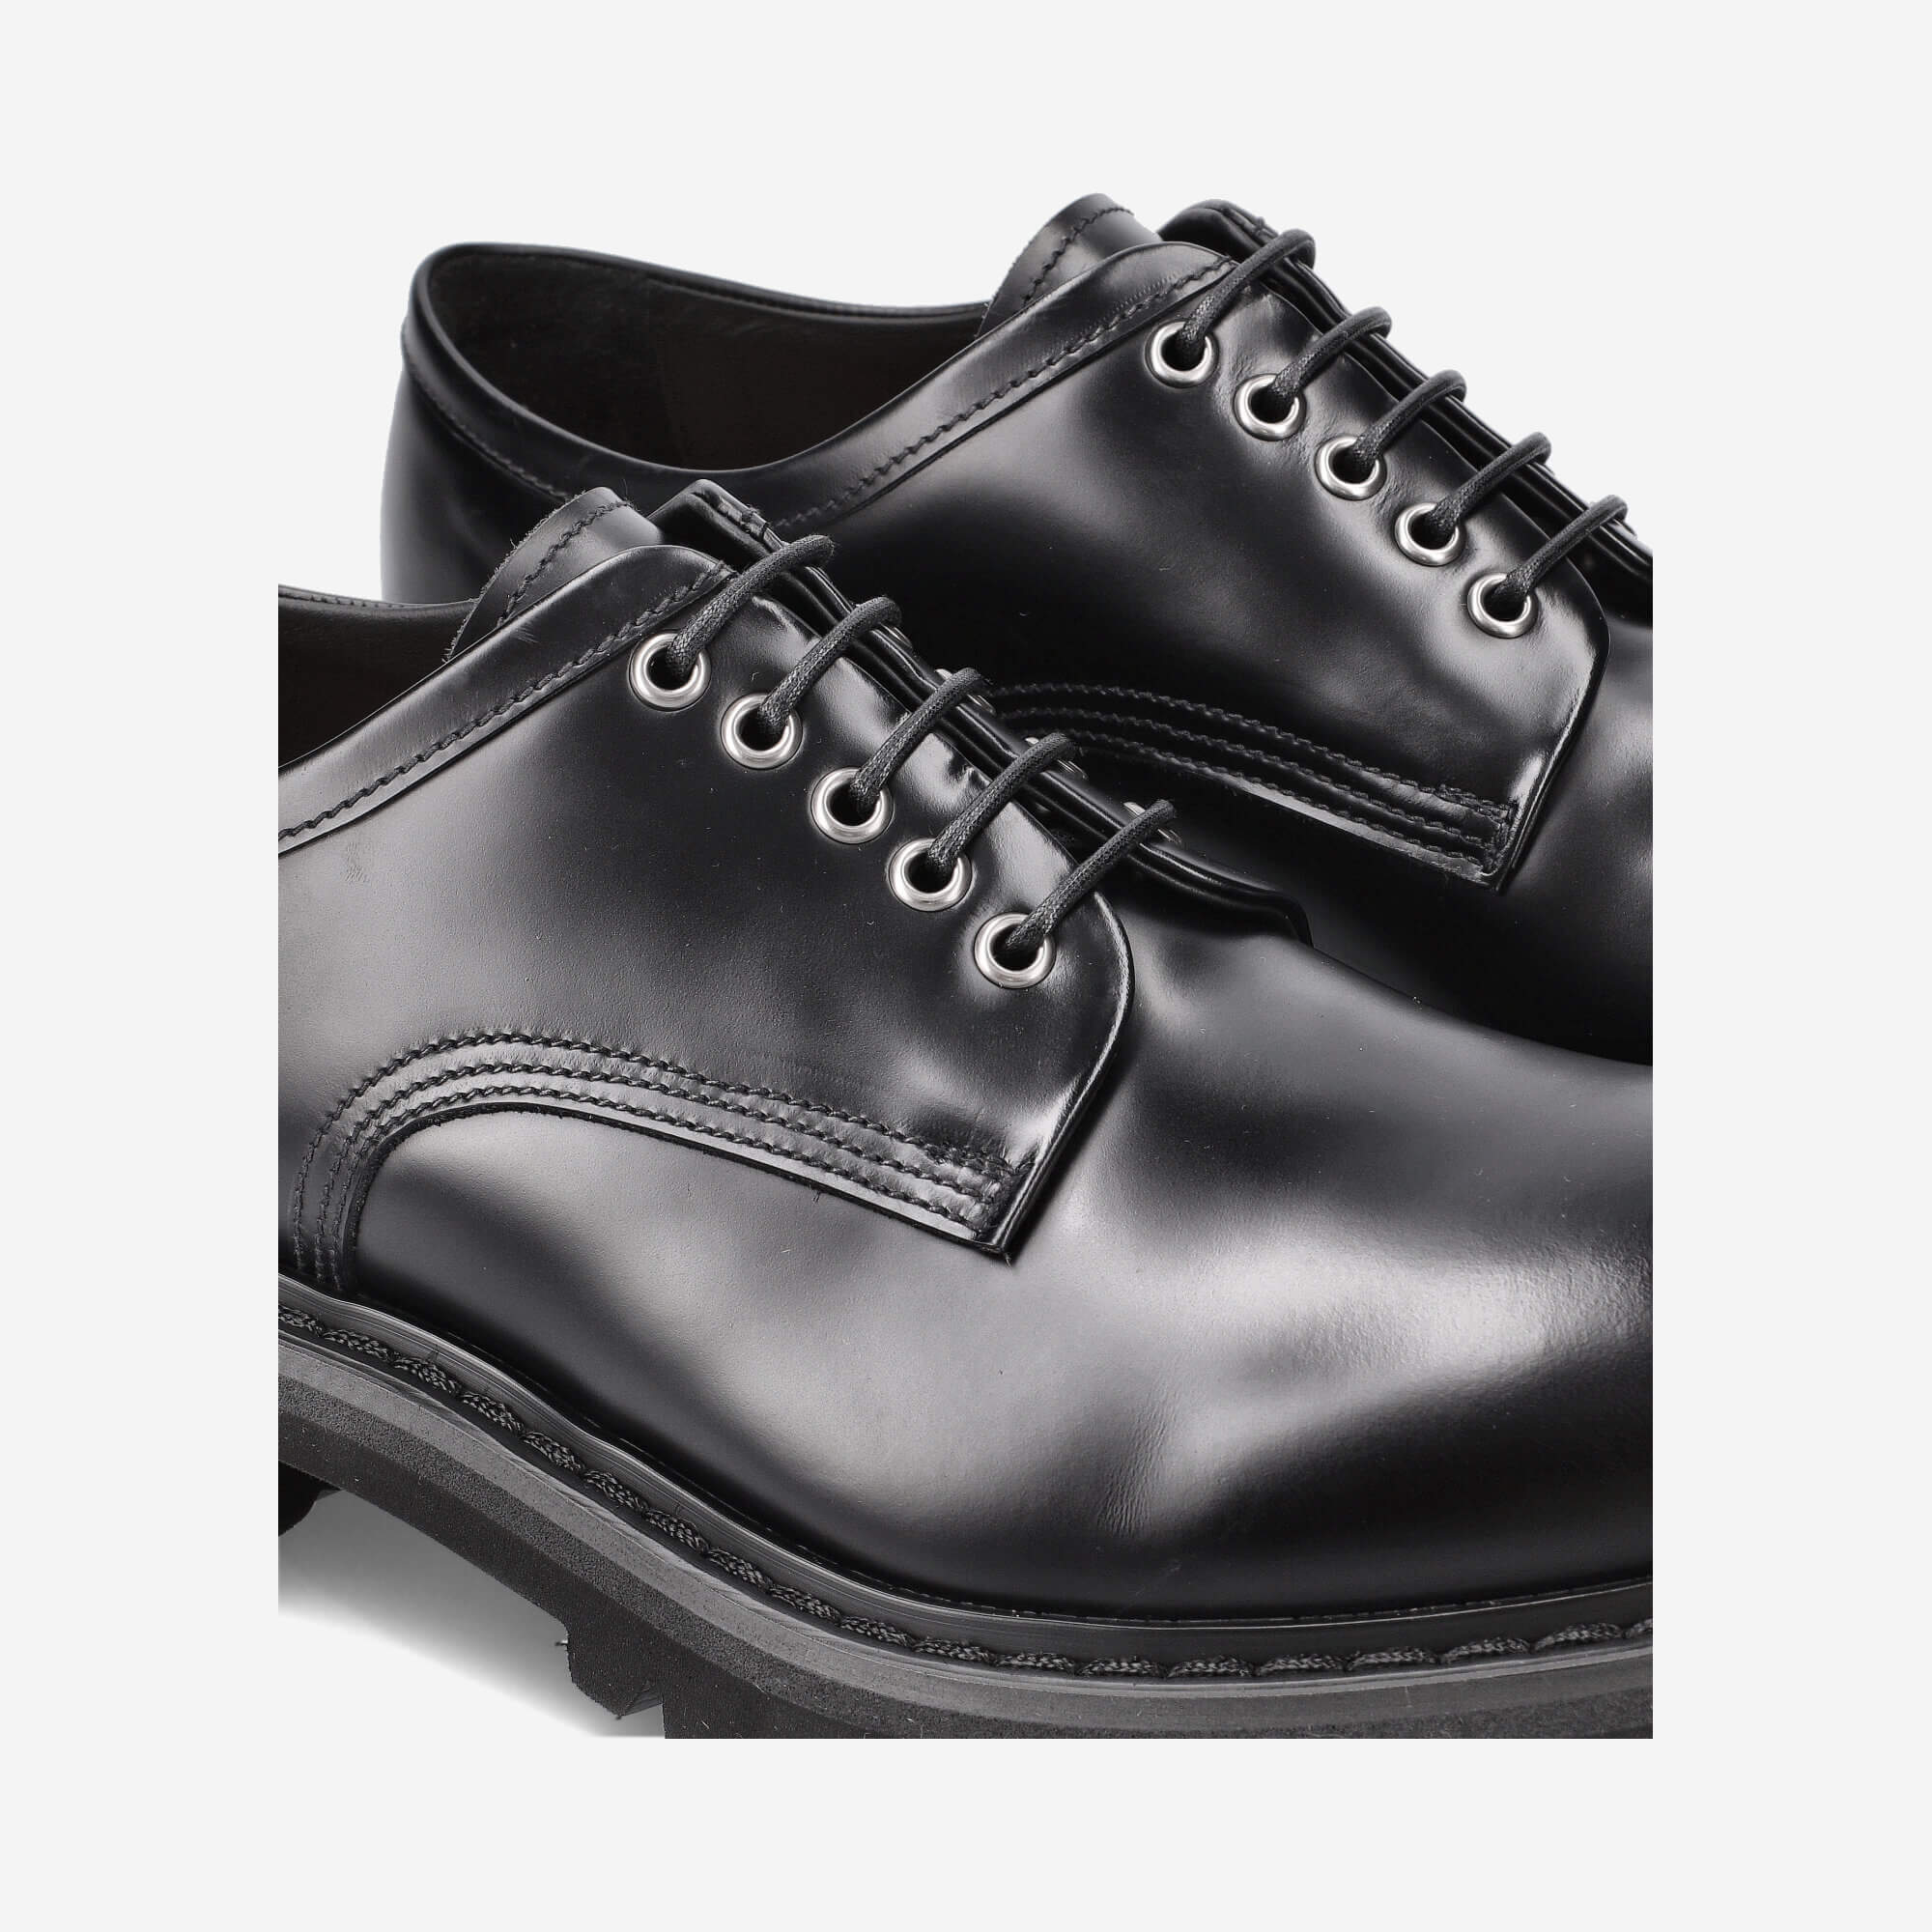 Men's classic black leather Derby shoes